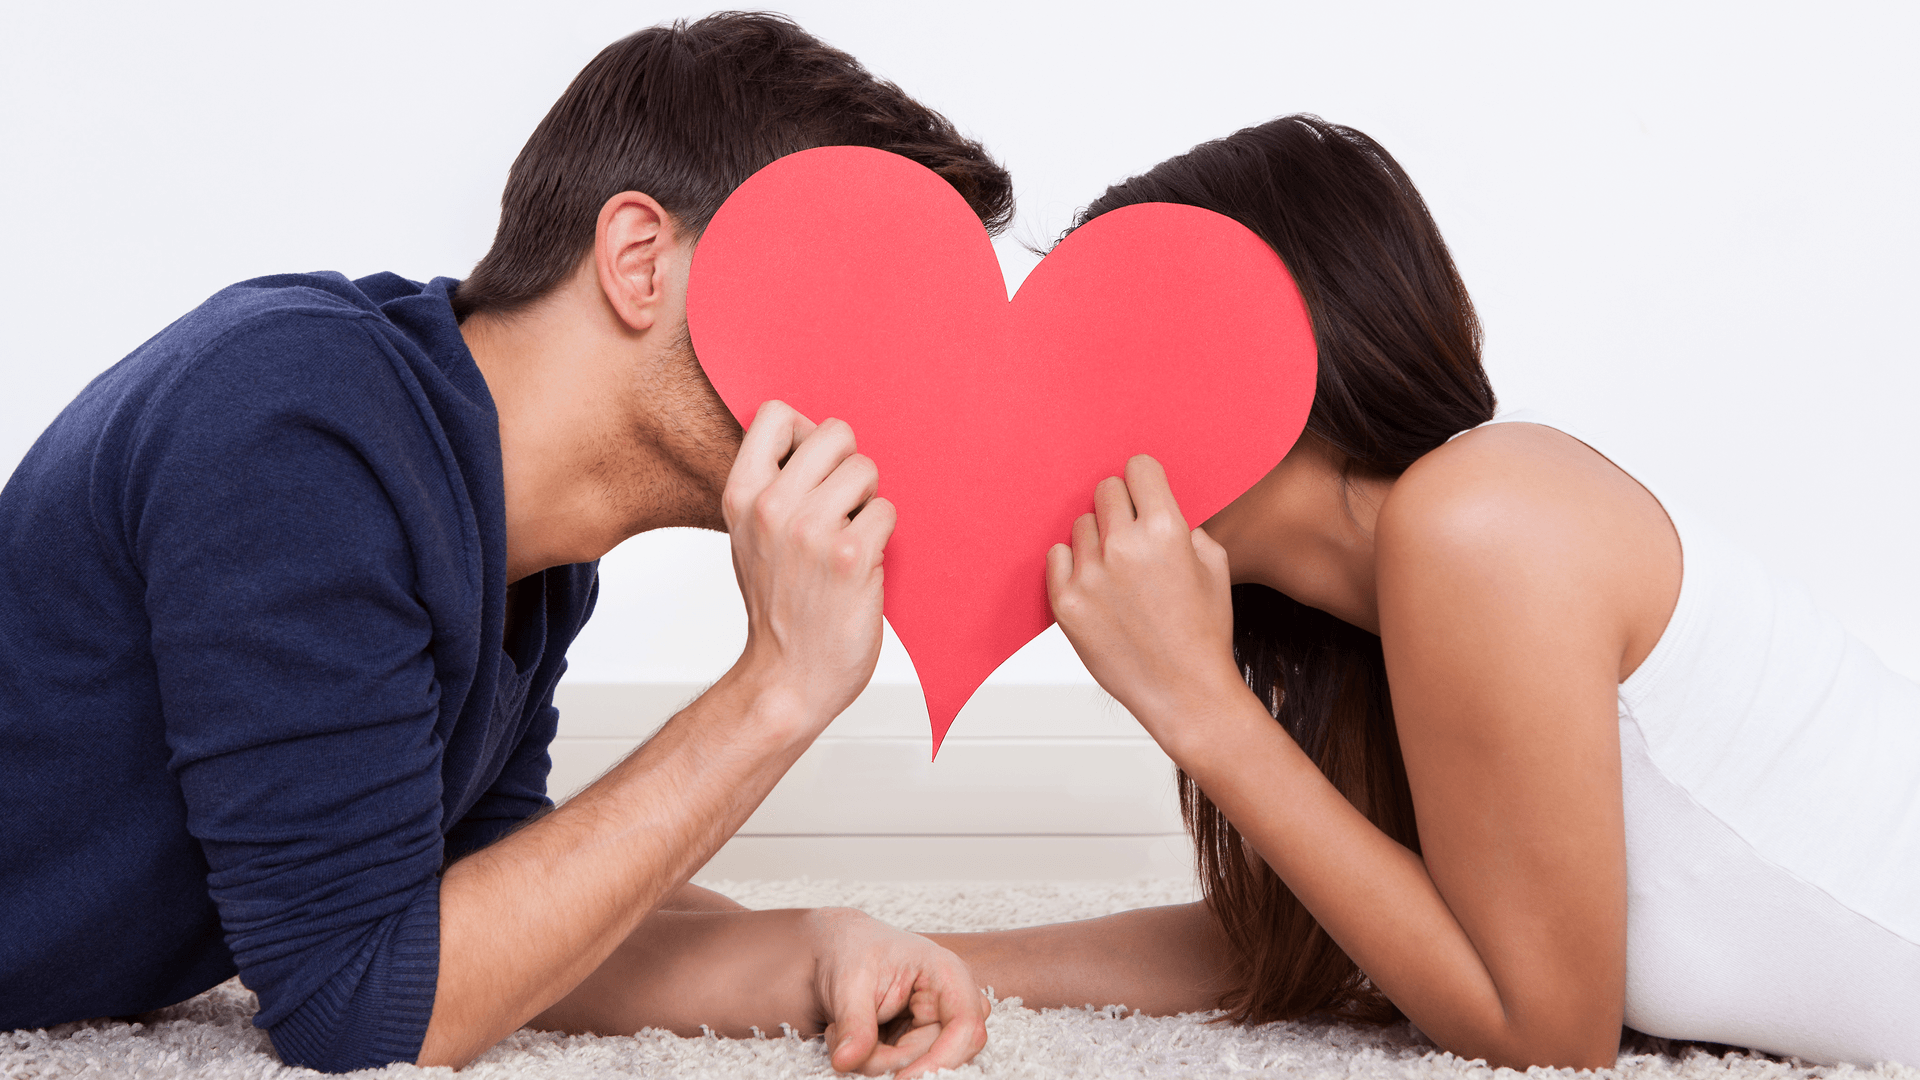 Sex bao nhiêu lần trong một tuần thì có lợi cho sức khỏe?